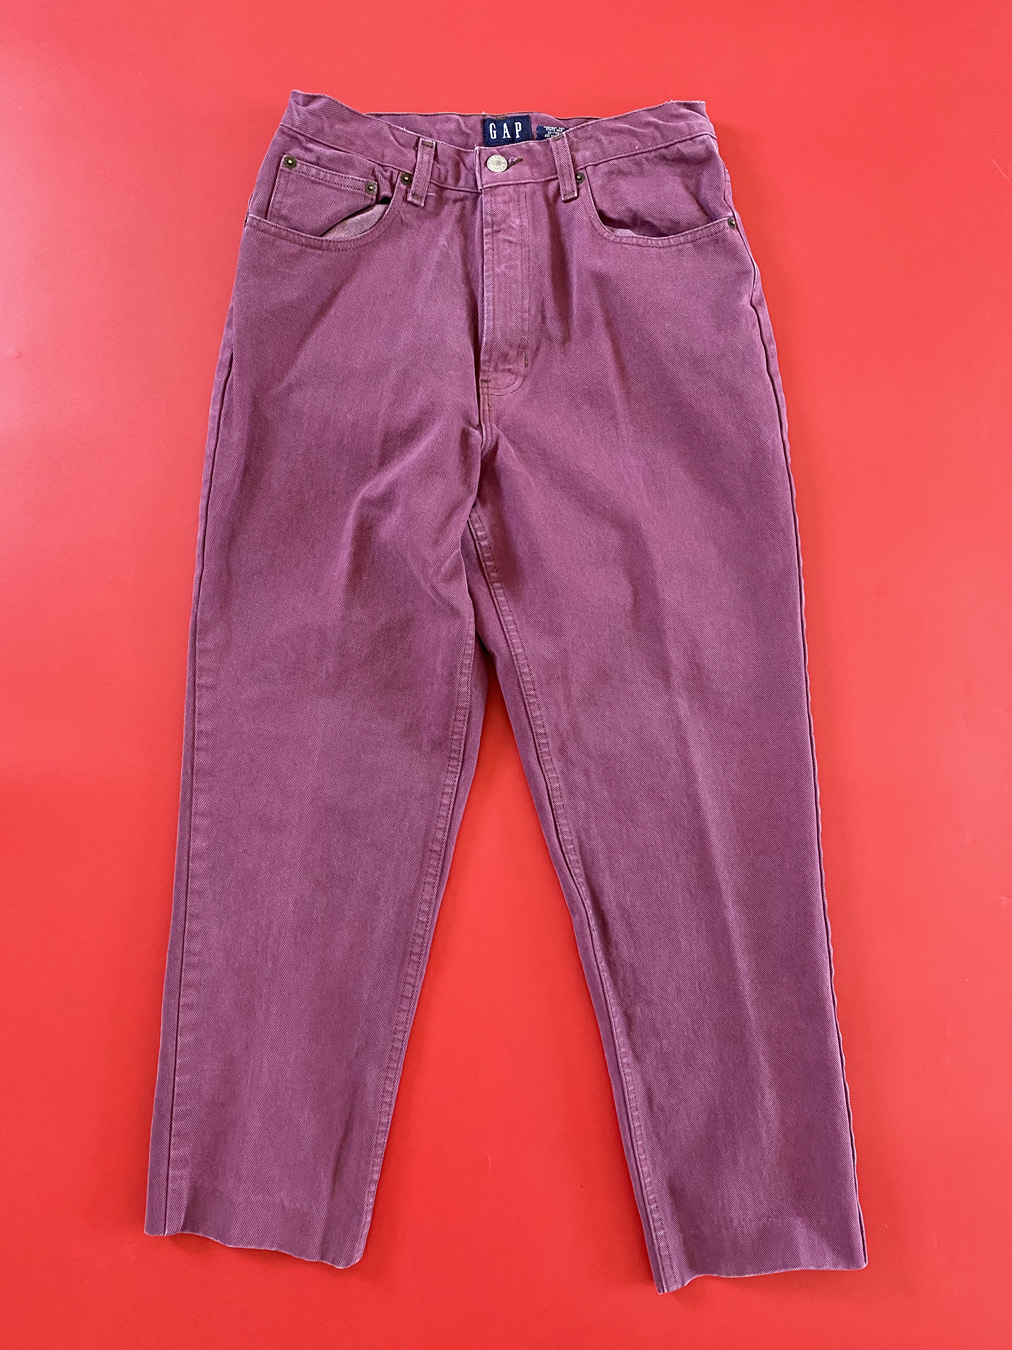 90s Purple GAP Denim Womans Jeans - 5 Star Vintage